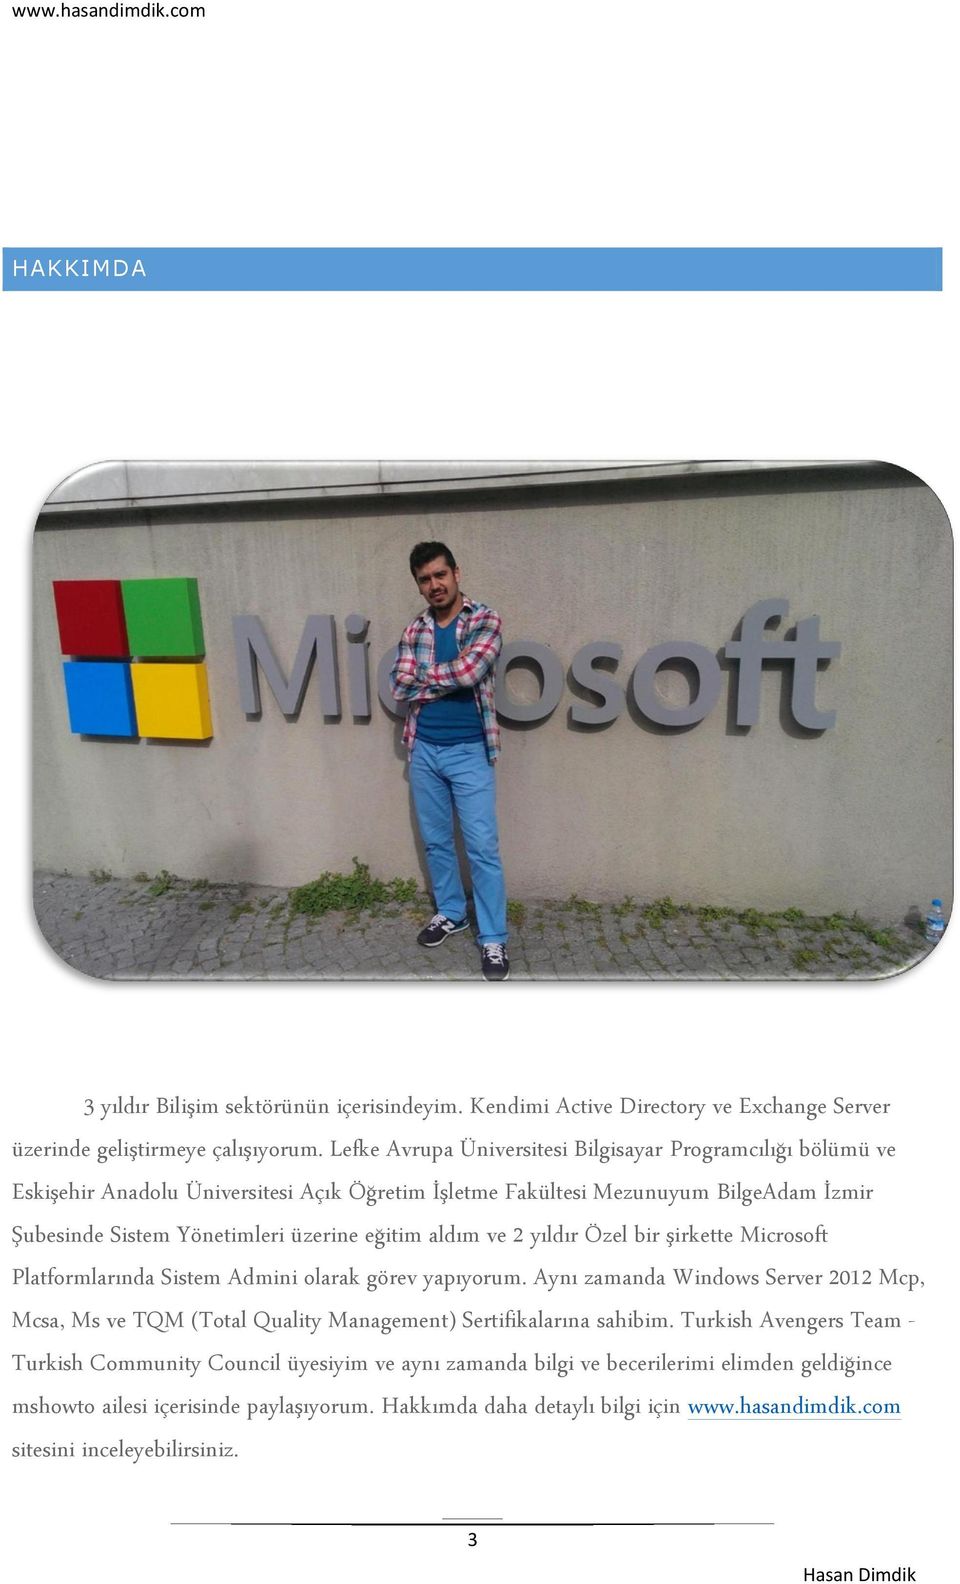 aldım ve 2 yıldır Özel bir şirkette Microsoft Platformlarında Sistem Admini olarak görev yapıyorum.